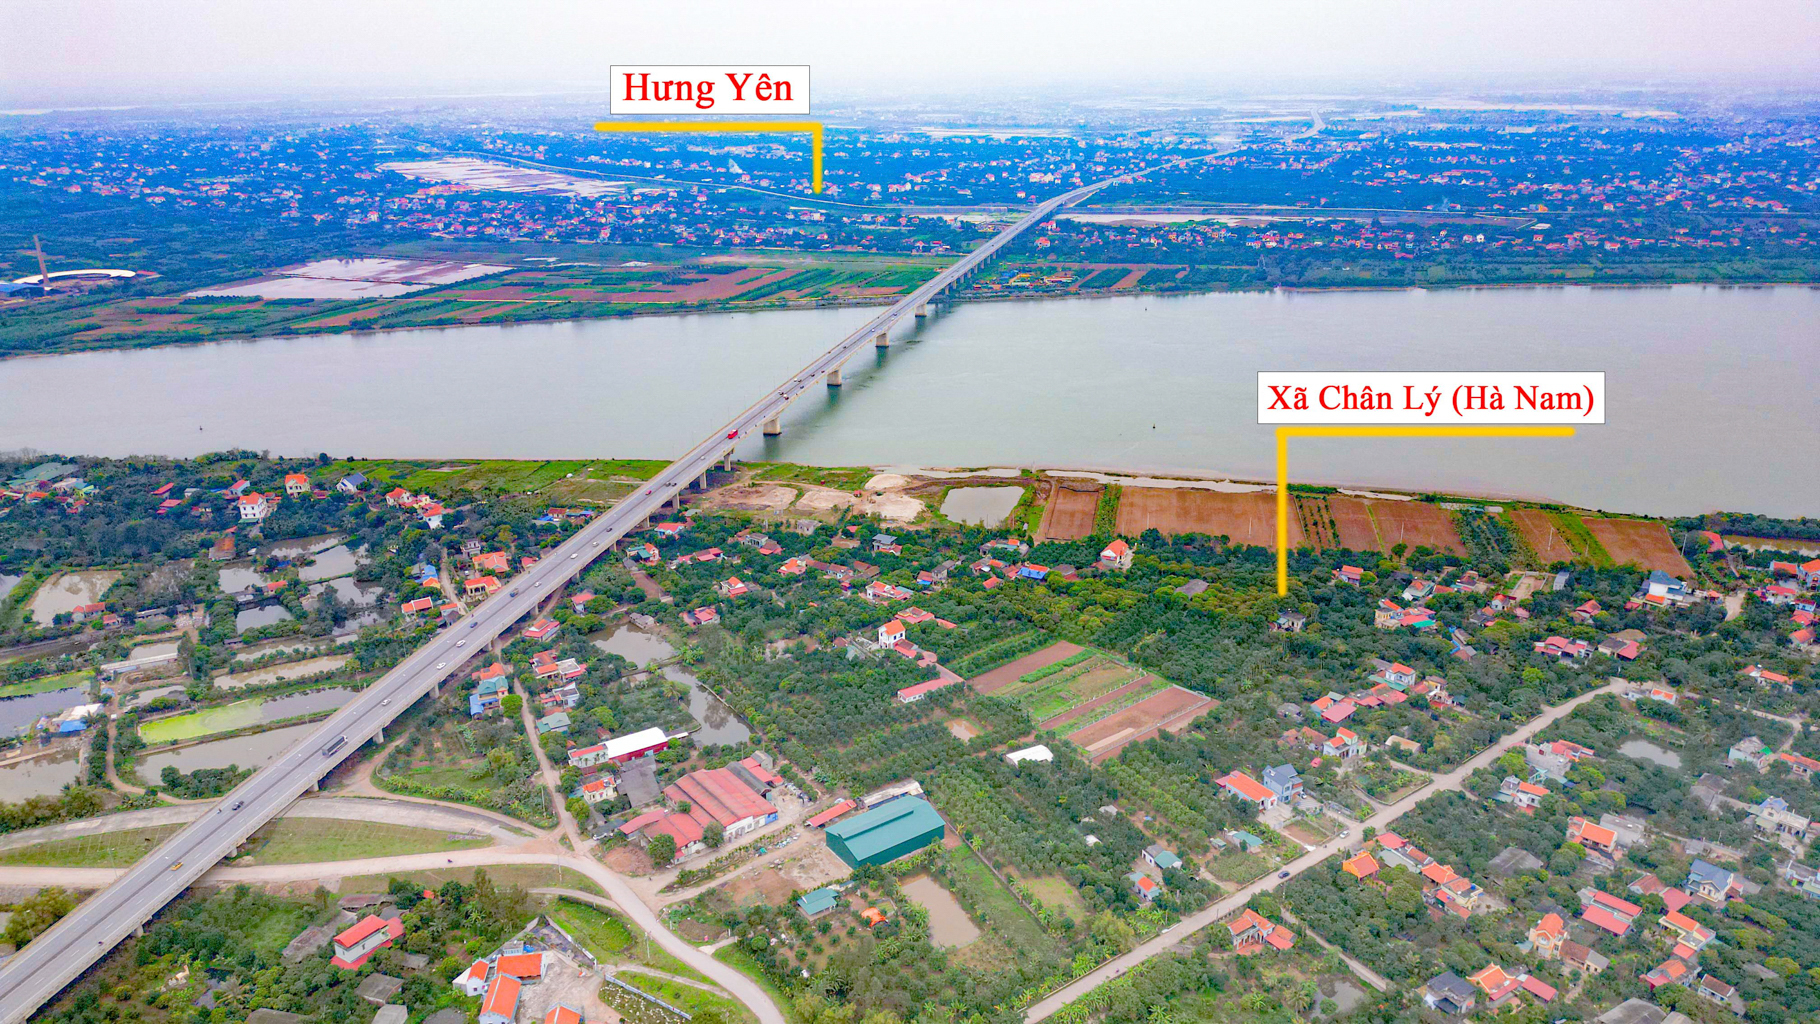 Xã nông thôn có 2 cây cầu nối 3 tỉnh, tương lai sẽ trở thành điểm kết nối 2 thành phố trực thuộc trung ương- Ảnh 9.